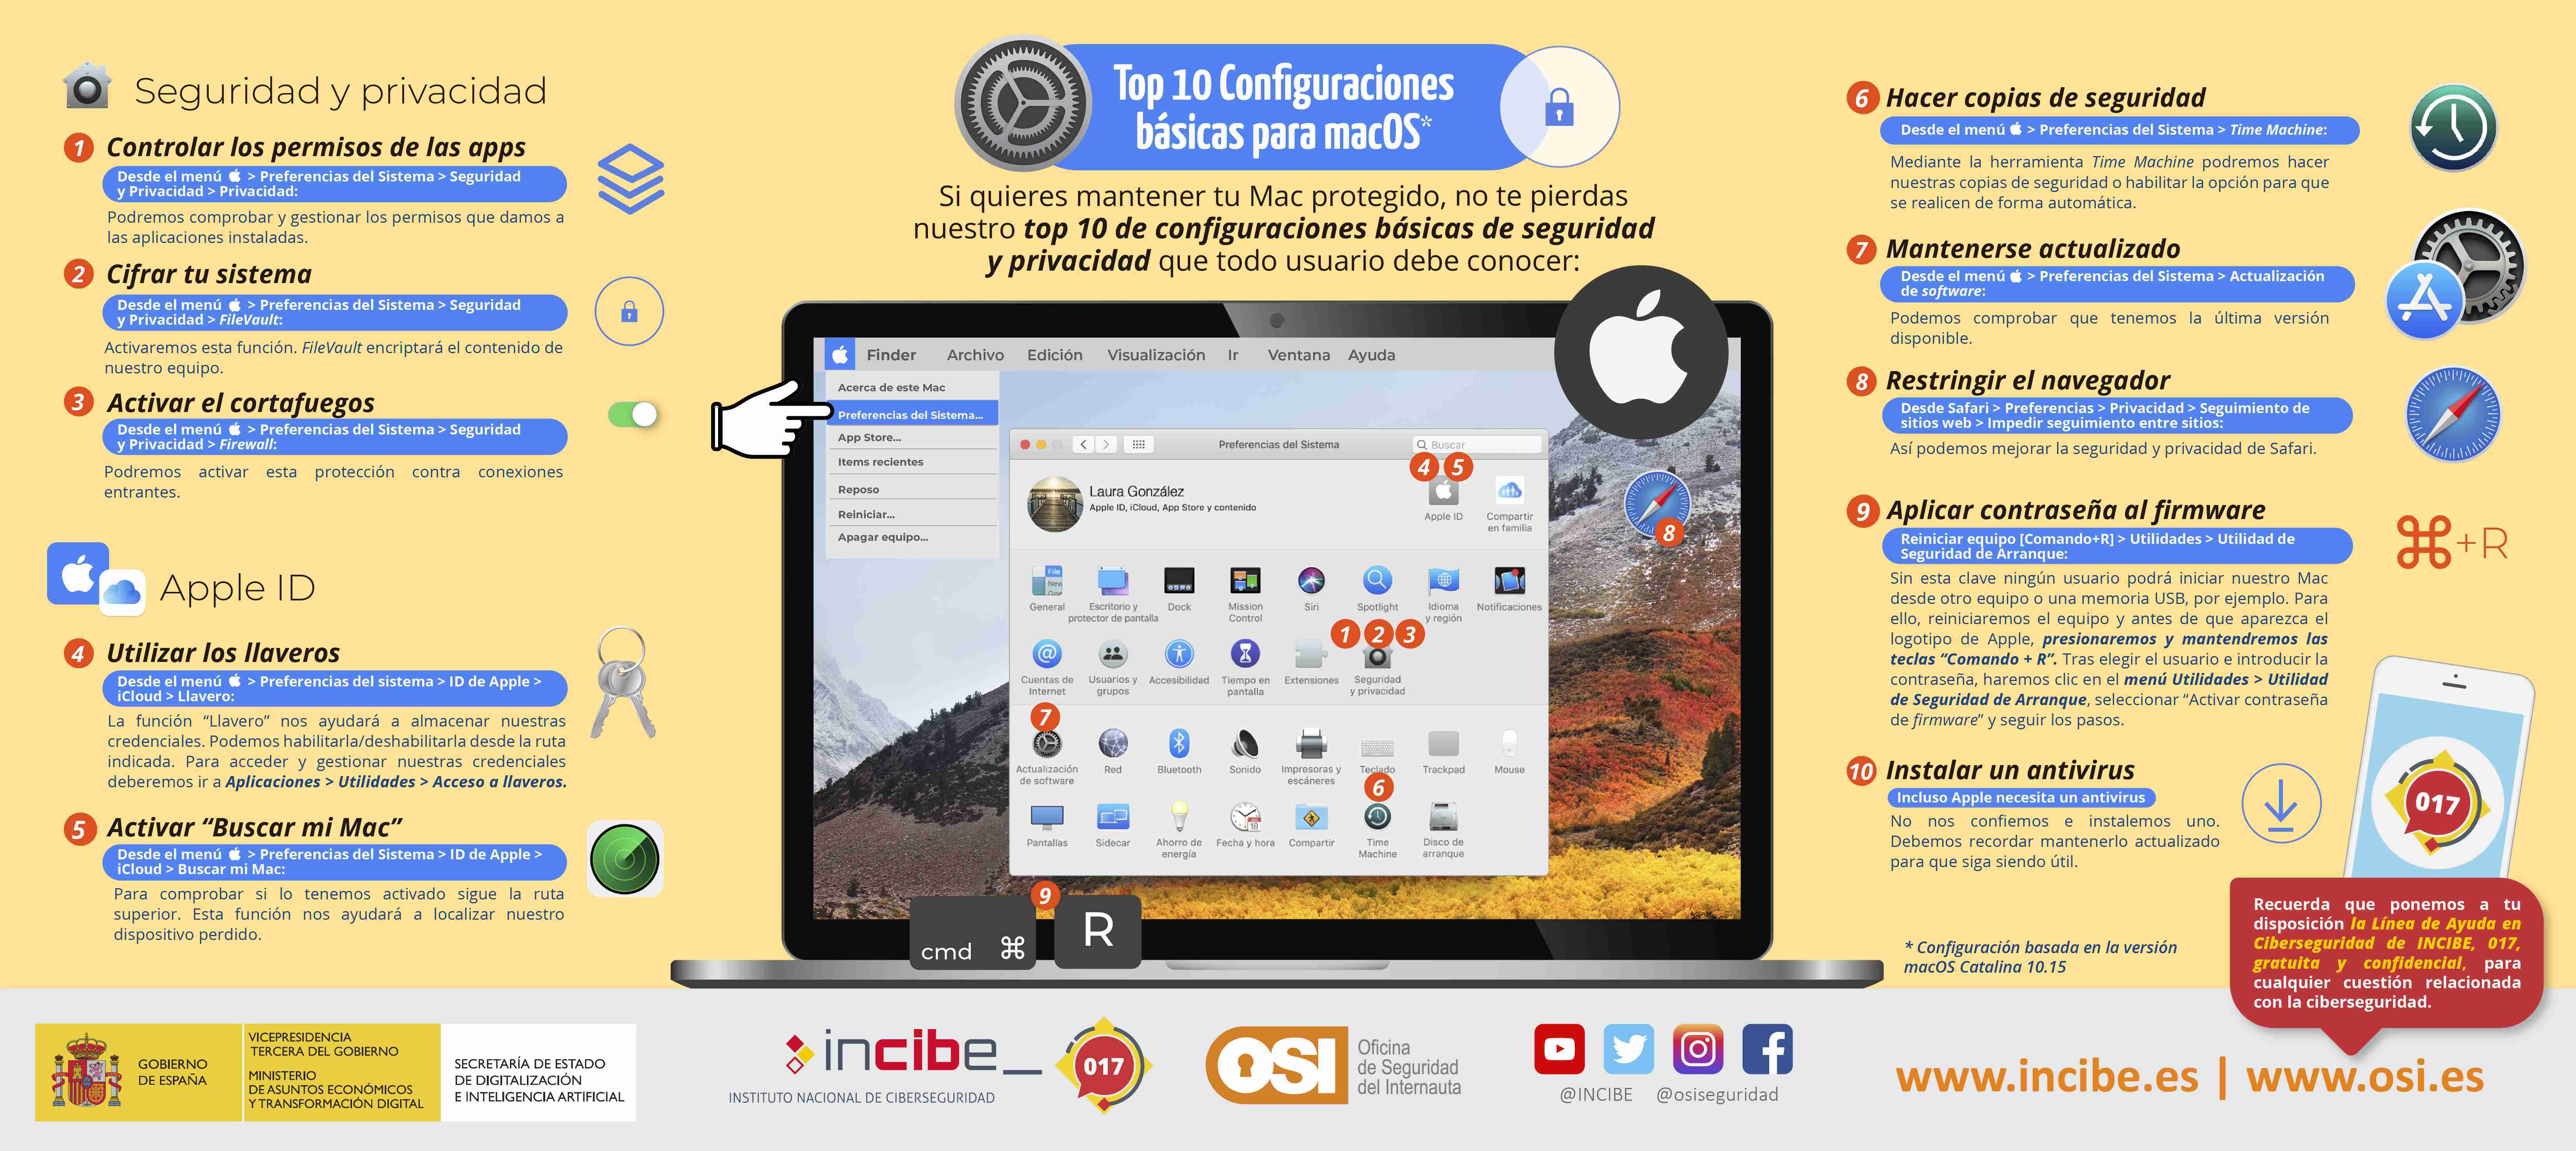 Imagen Top 10 configuraciones básicas para macOS